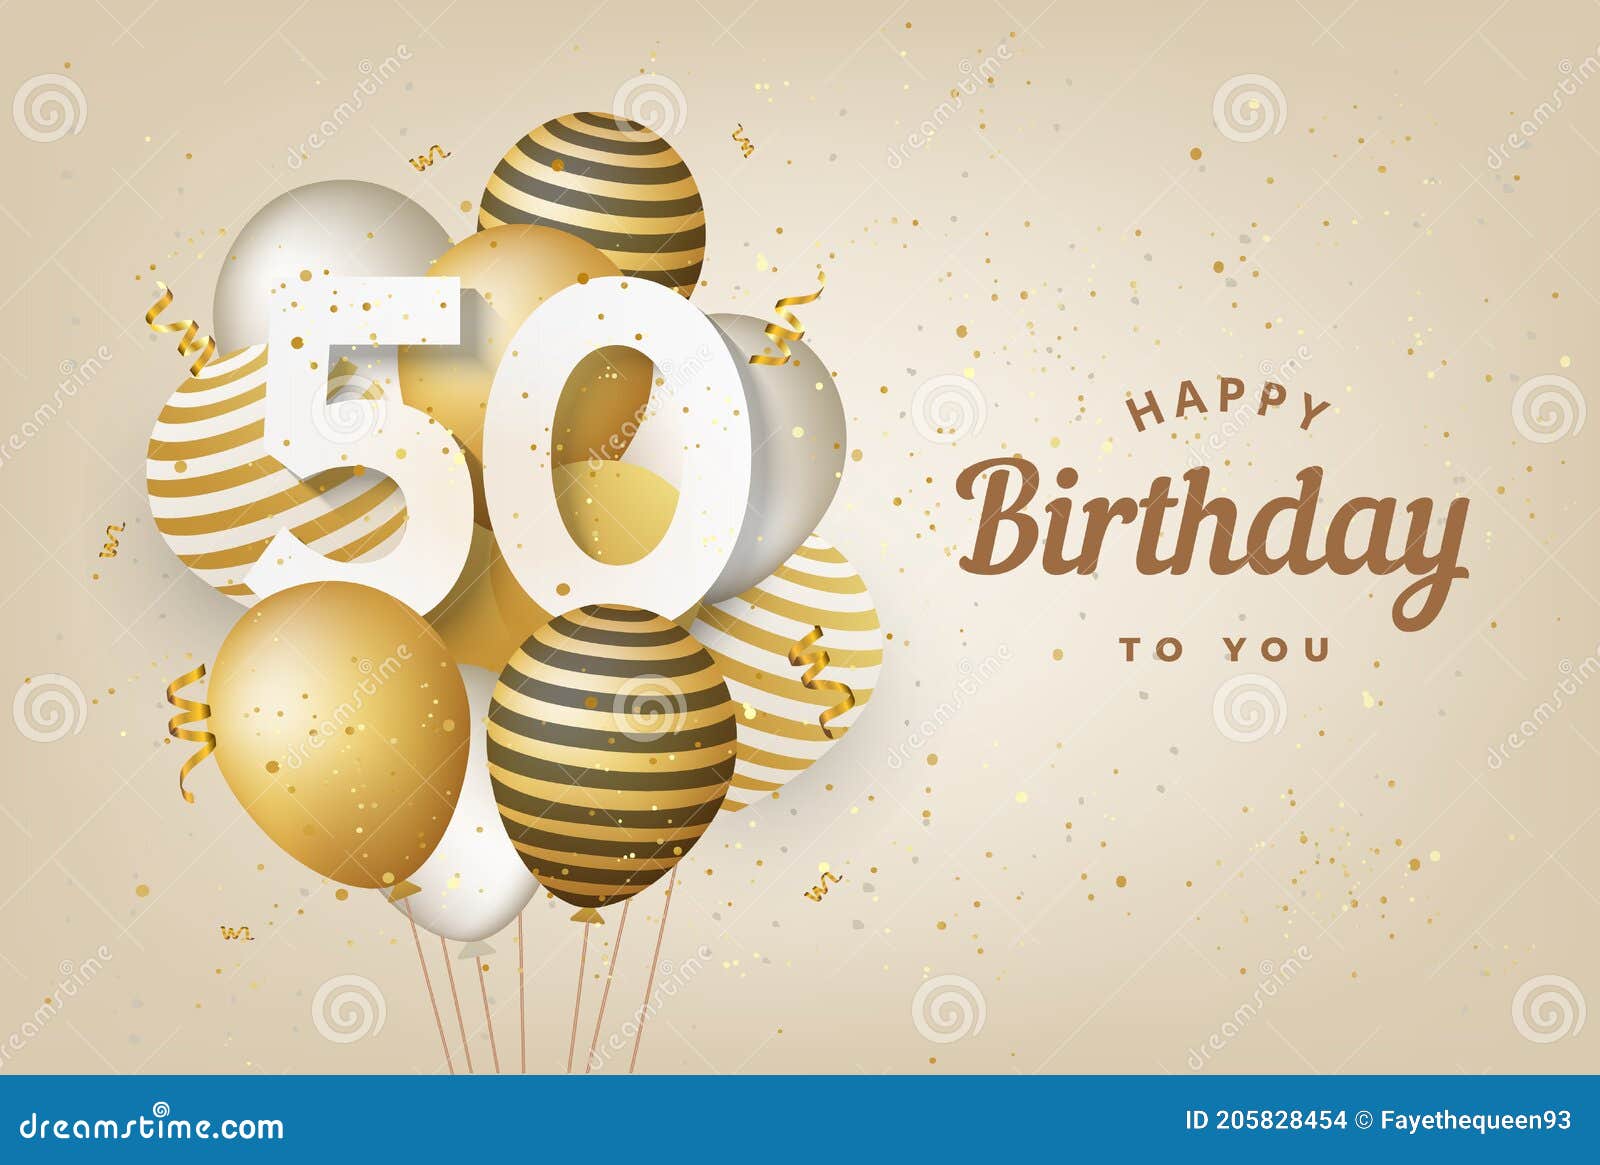 Chào mừng sinh nhật lần thứ 50 của bạn! Đây là một dịp đặc biệt và chúng tôi mong bạn sẽ có một ngày tuyệt vời. Hãy xem hình ảnh để cùng chúc mừng và ghi lại những khoảnh khắc đáng nhớ nhé!